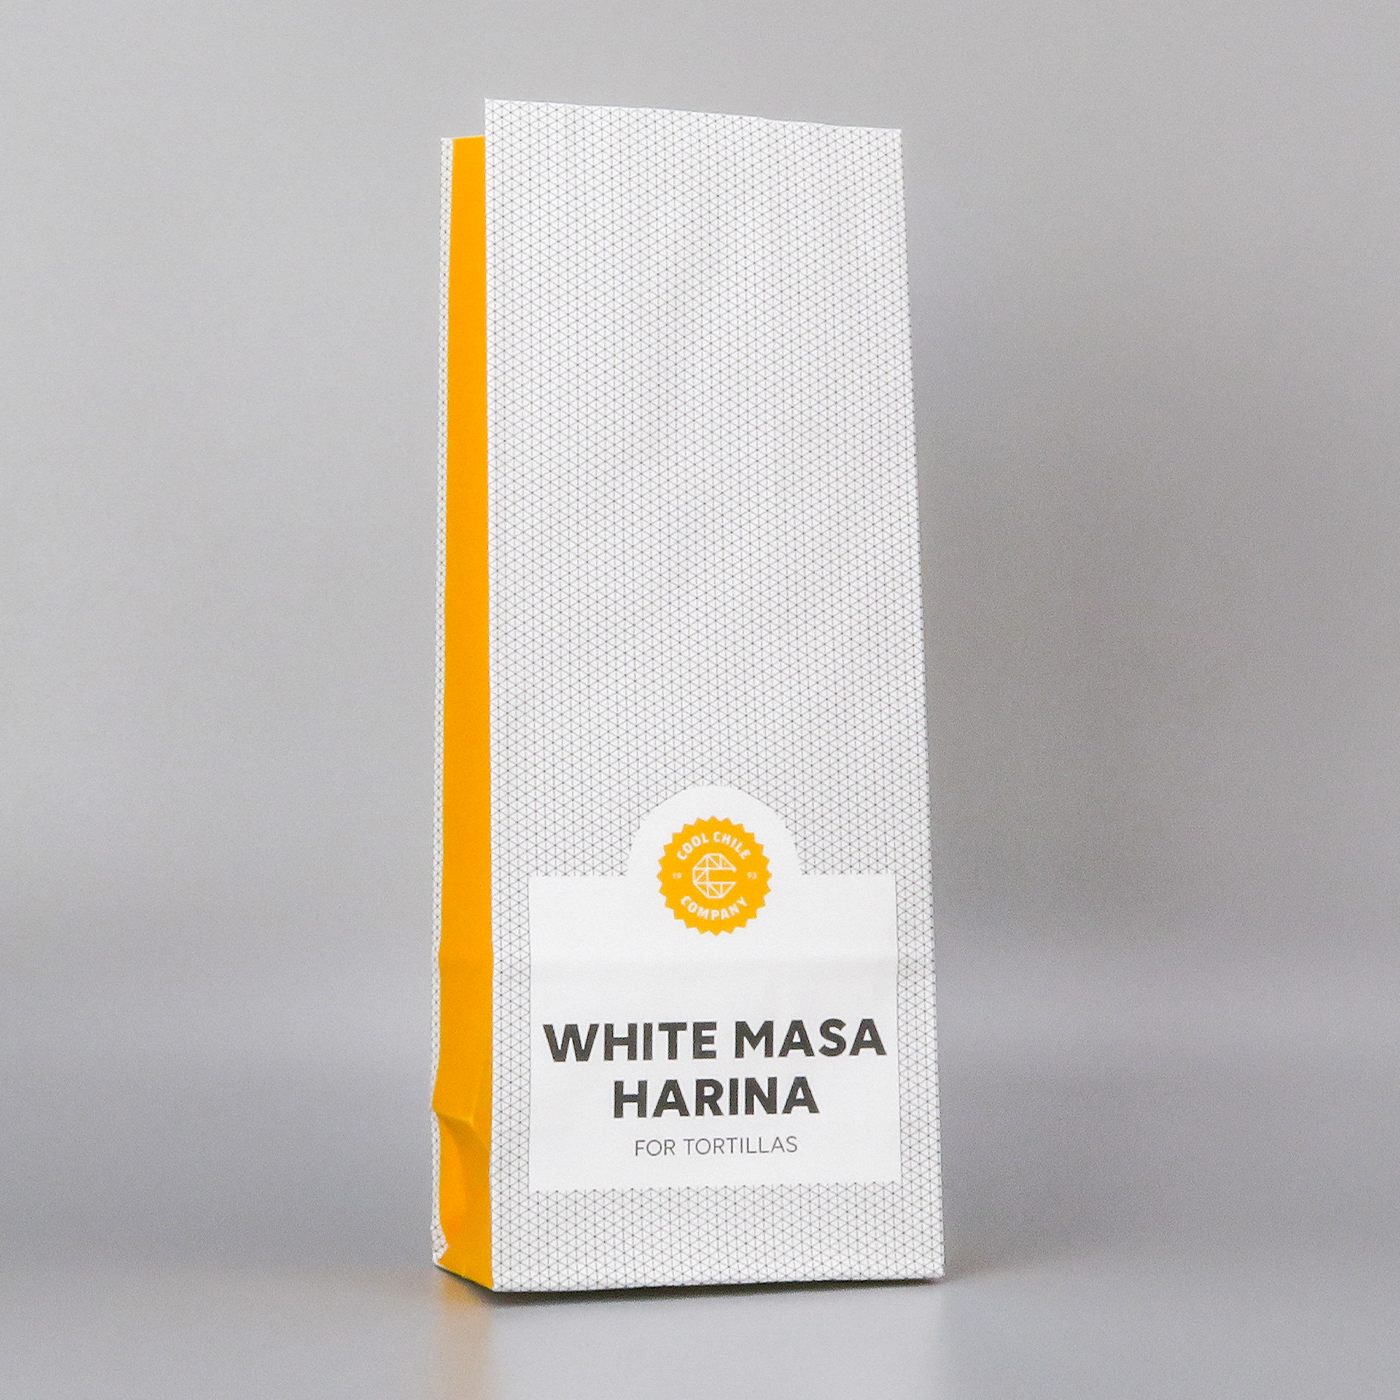 White masa harina 500g - product image